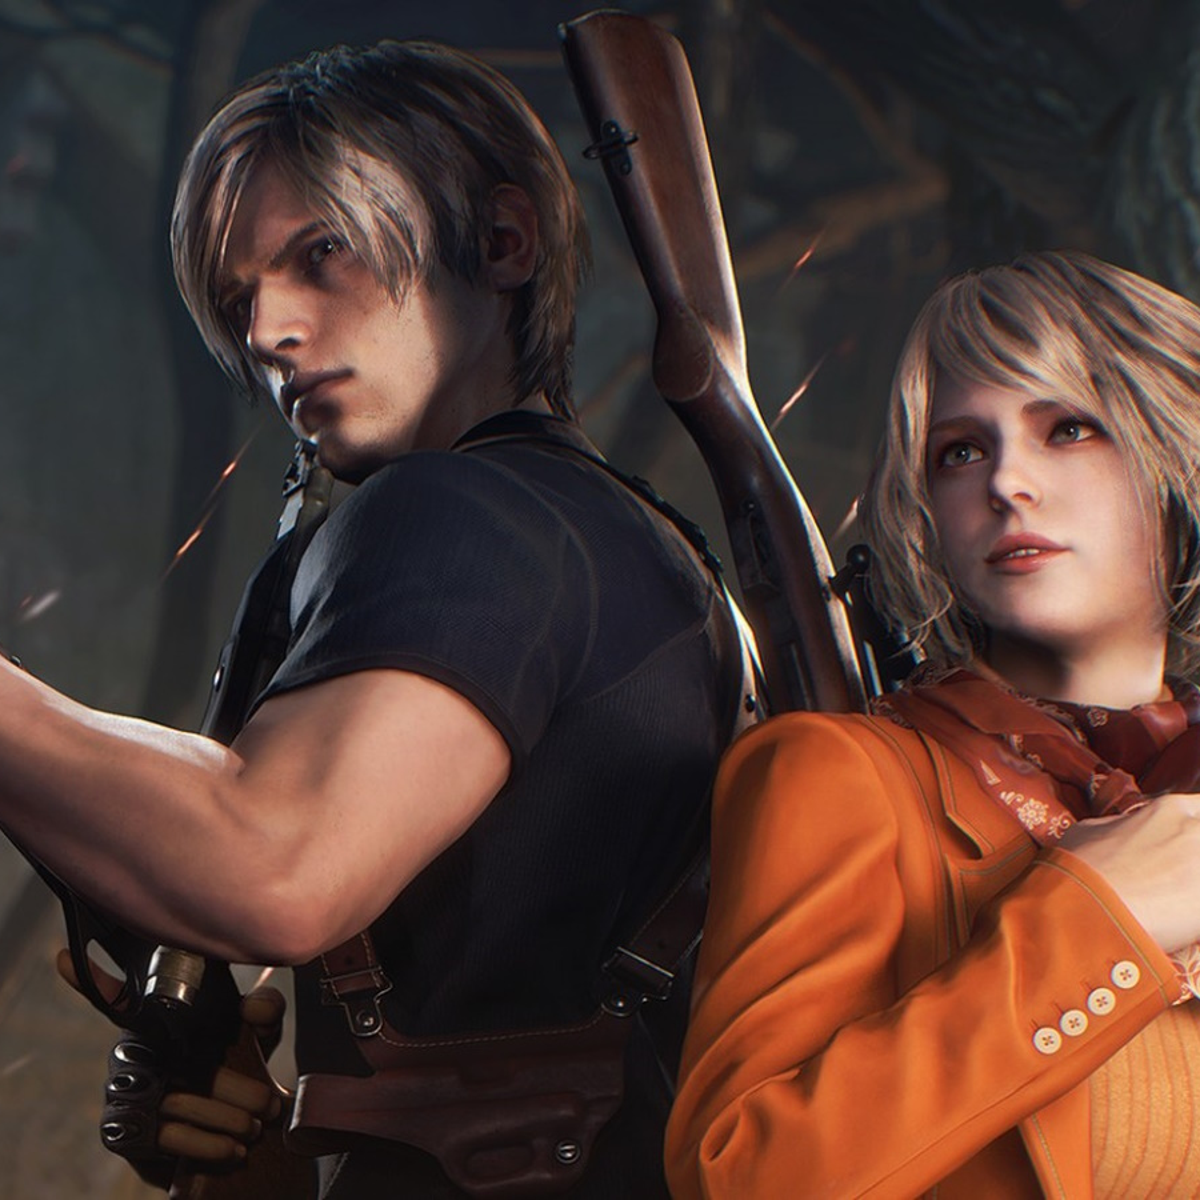 Resident Evil 2 Remake: guia para encontrar todos os upgrades de